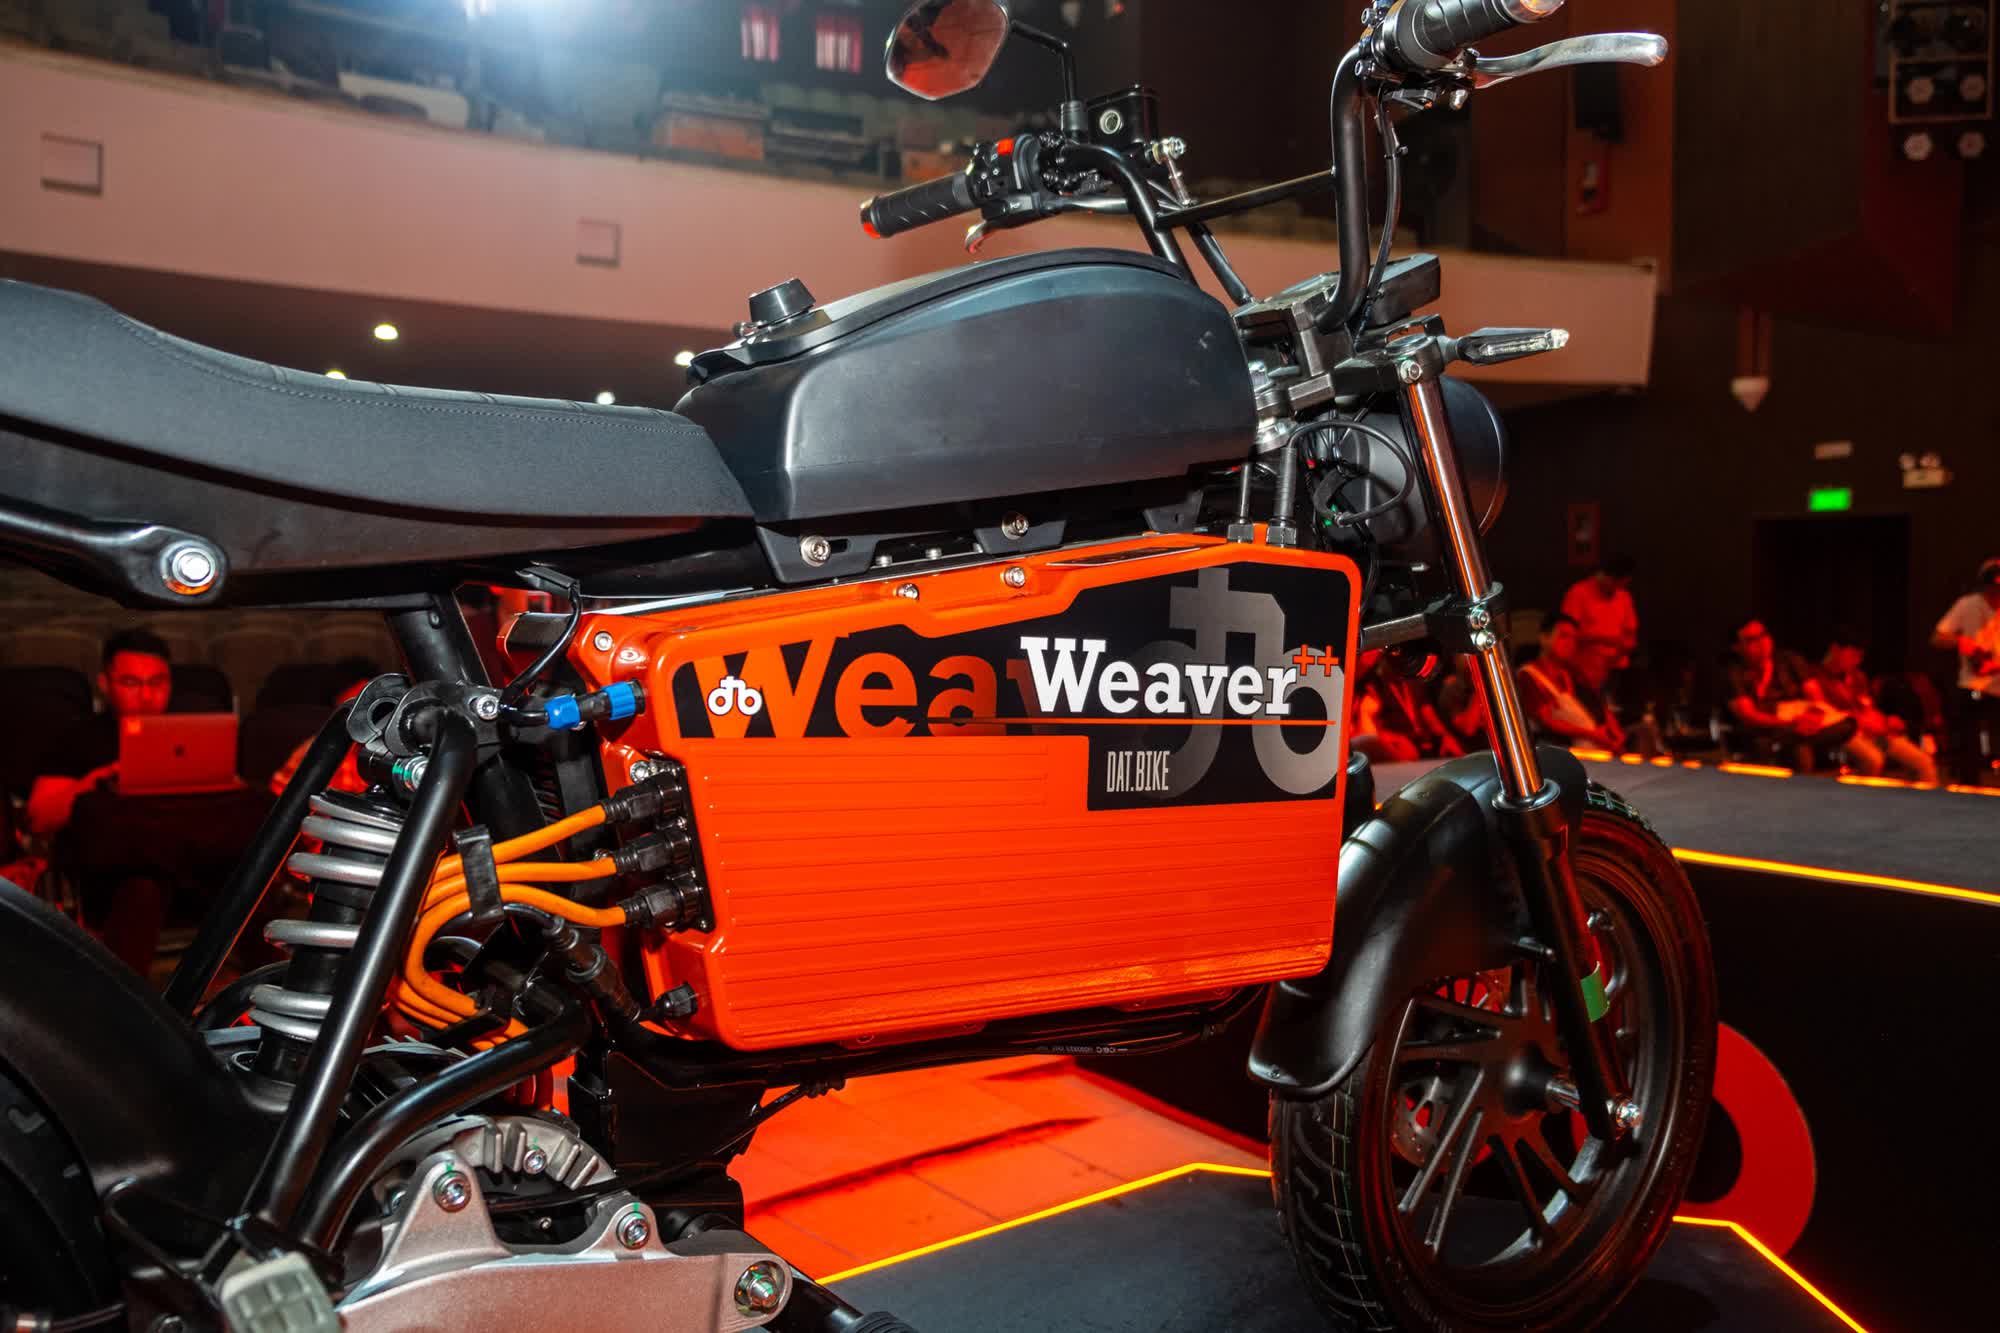 Ra mắt Dat Bike Weaver++: Giá 65,9 triệu đồng, dáng cổ điển, sạc nhanh chưa từng có tại Việt Nam - ảnh 4